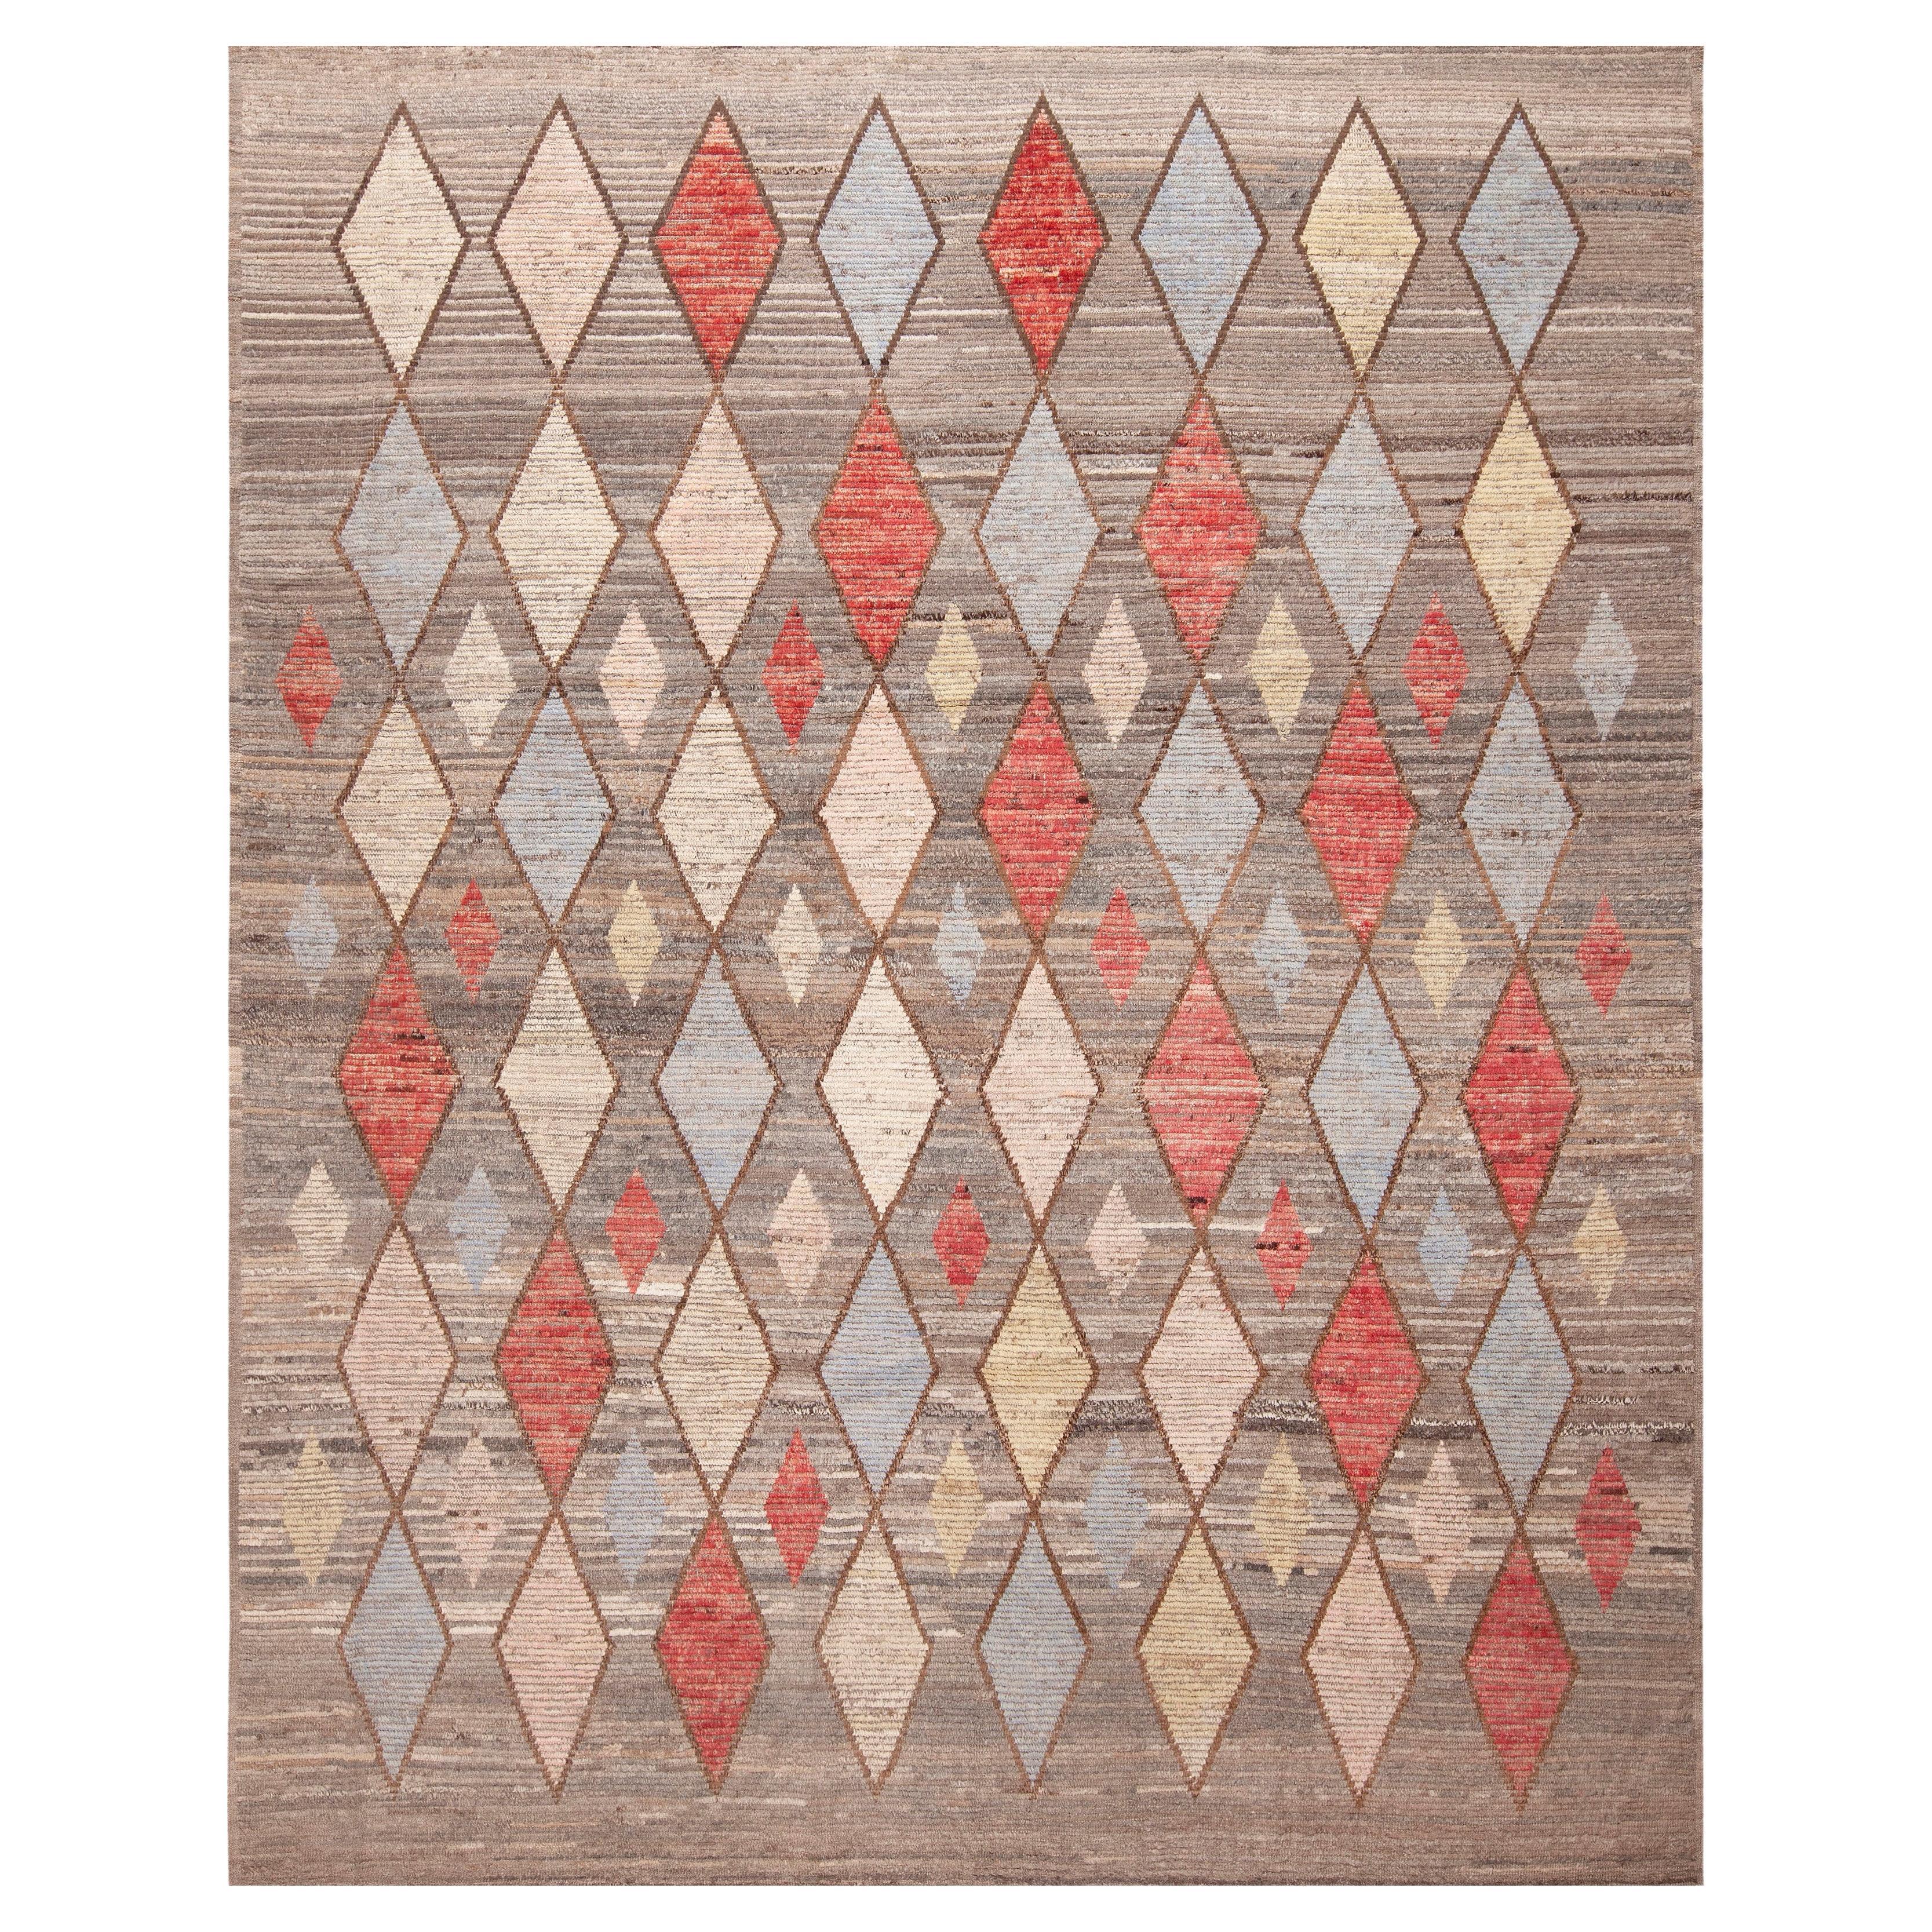 Collection Nazmiyal, tapis tribal géométrique à motif de diamants moderne 9'5" x 11'8"